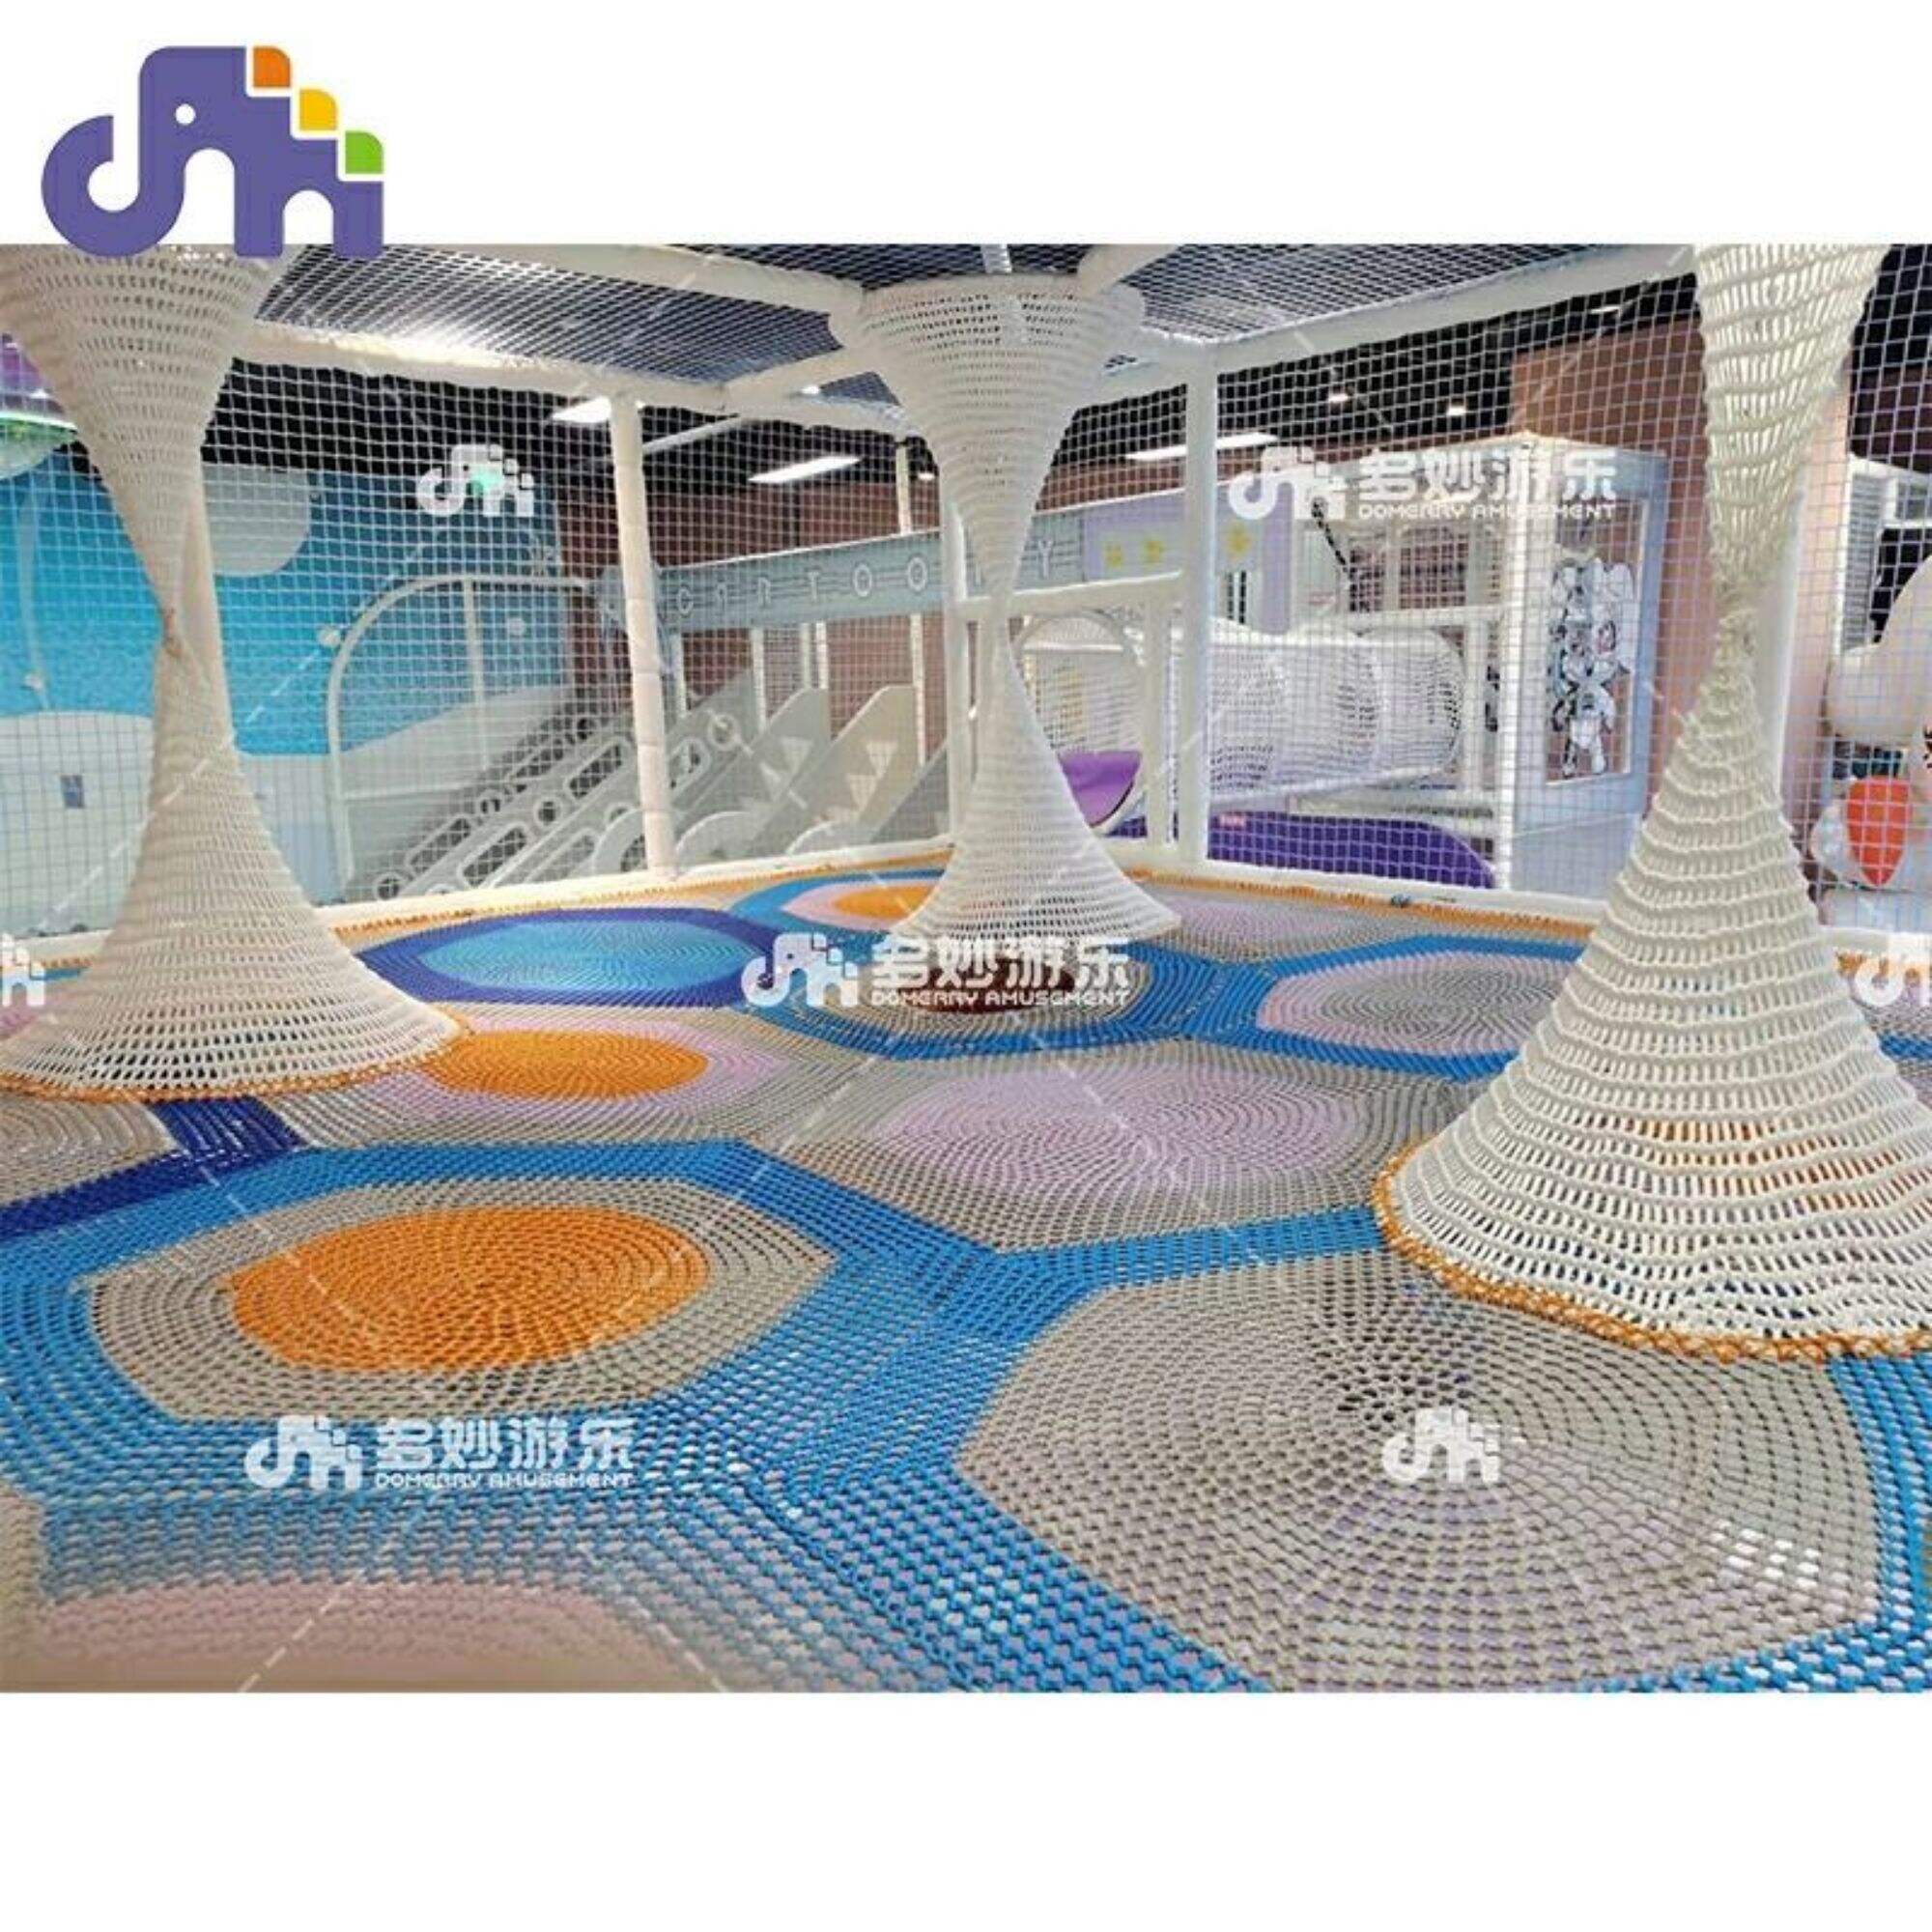 Thiết bị tập thể dục thương mại dành cho trẻ em Lưới nylon mềm dành cho công viên giải trí Sân chơi Phòng tập thể dục trong rừng với chất liệu bền và mềm